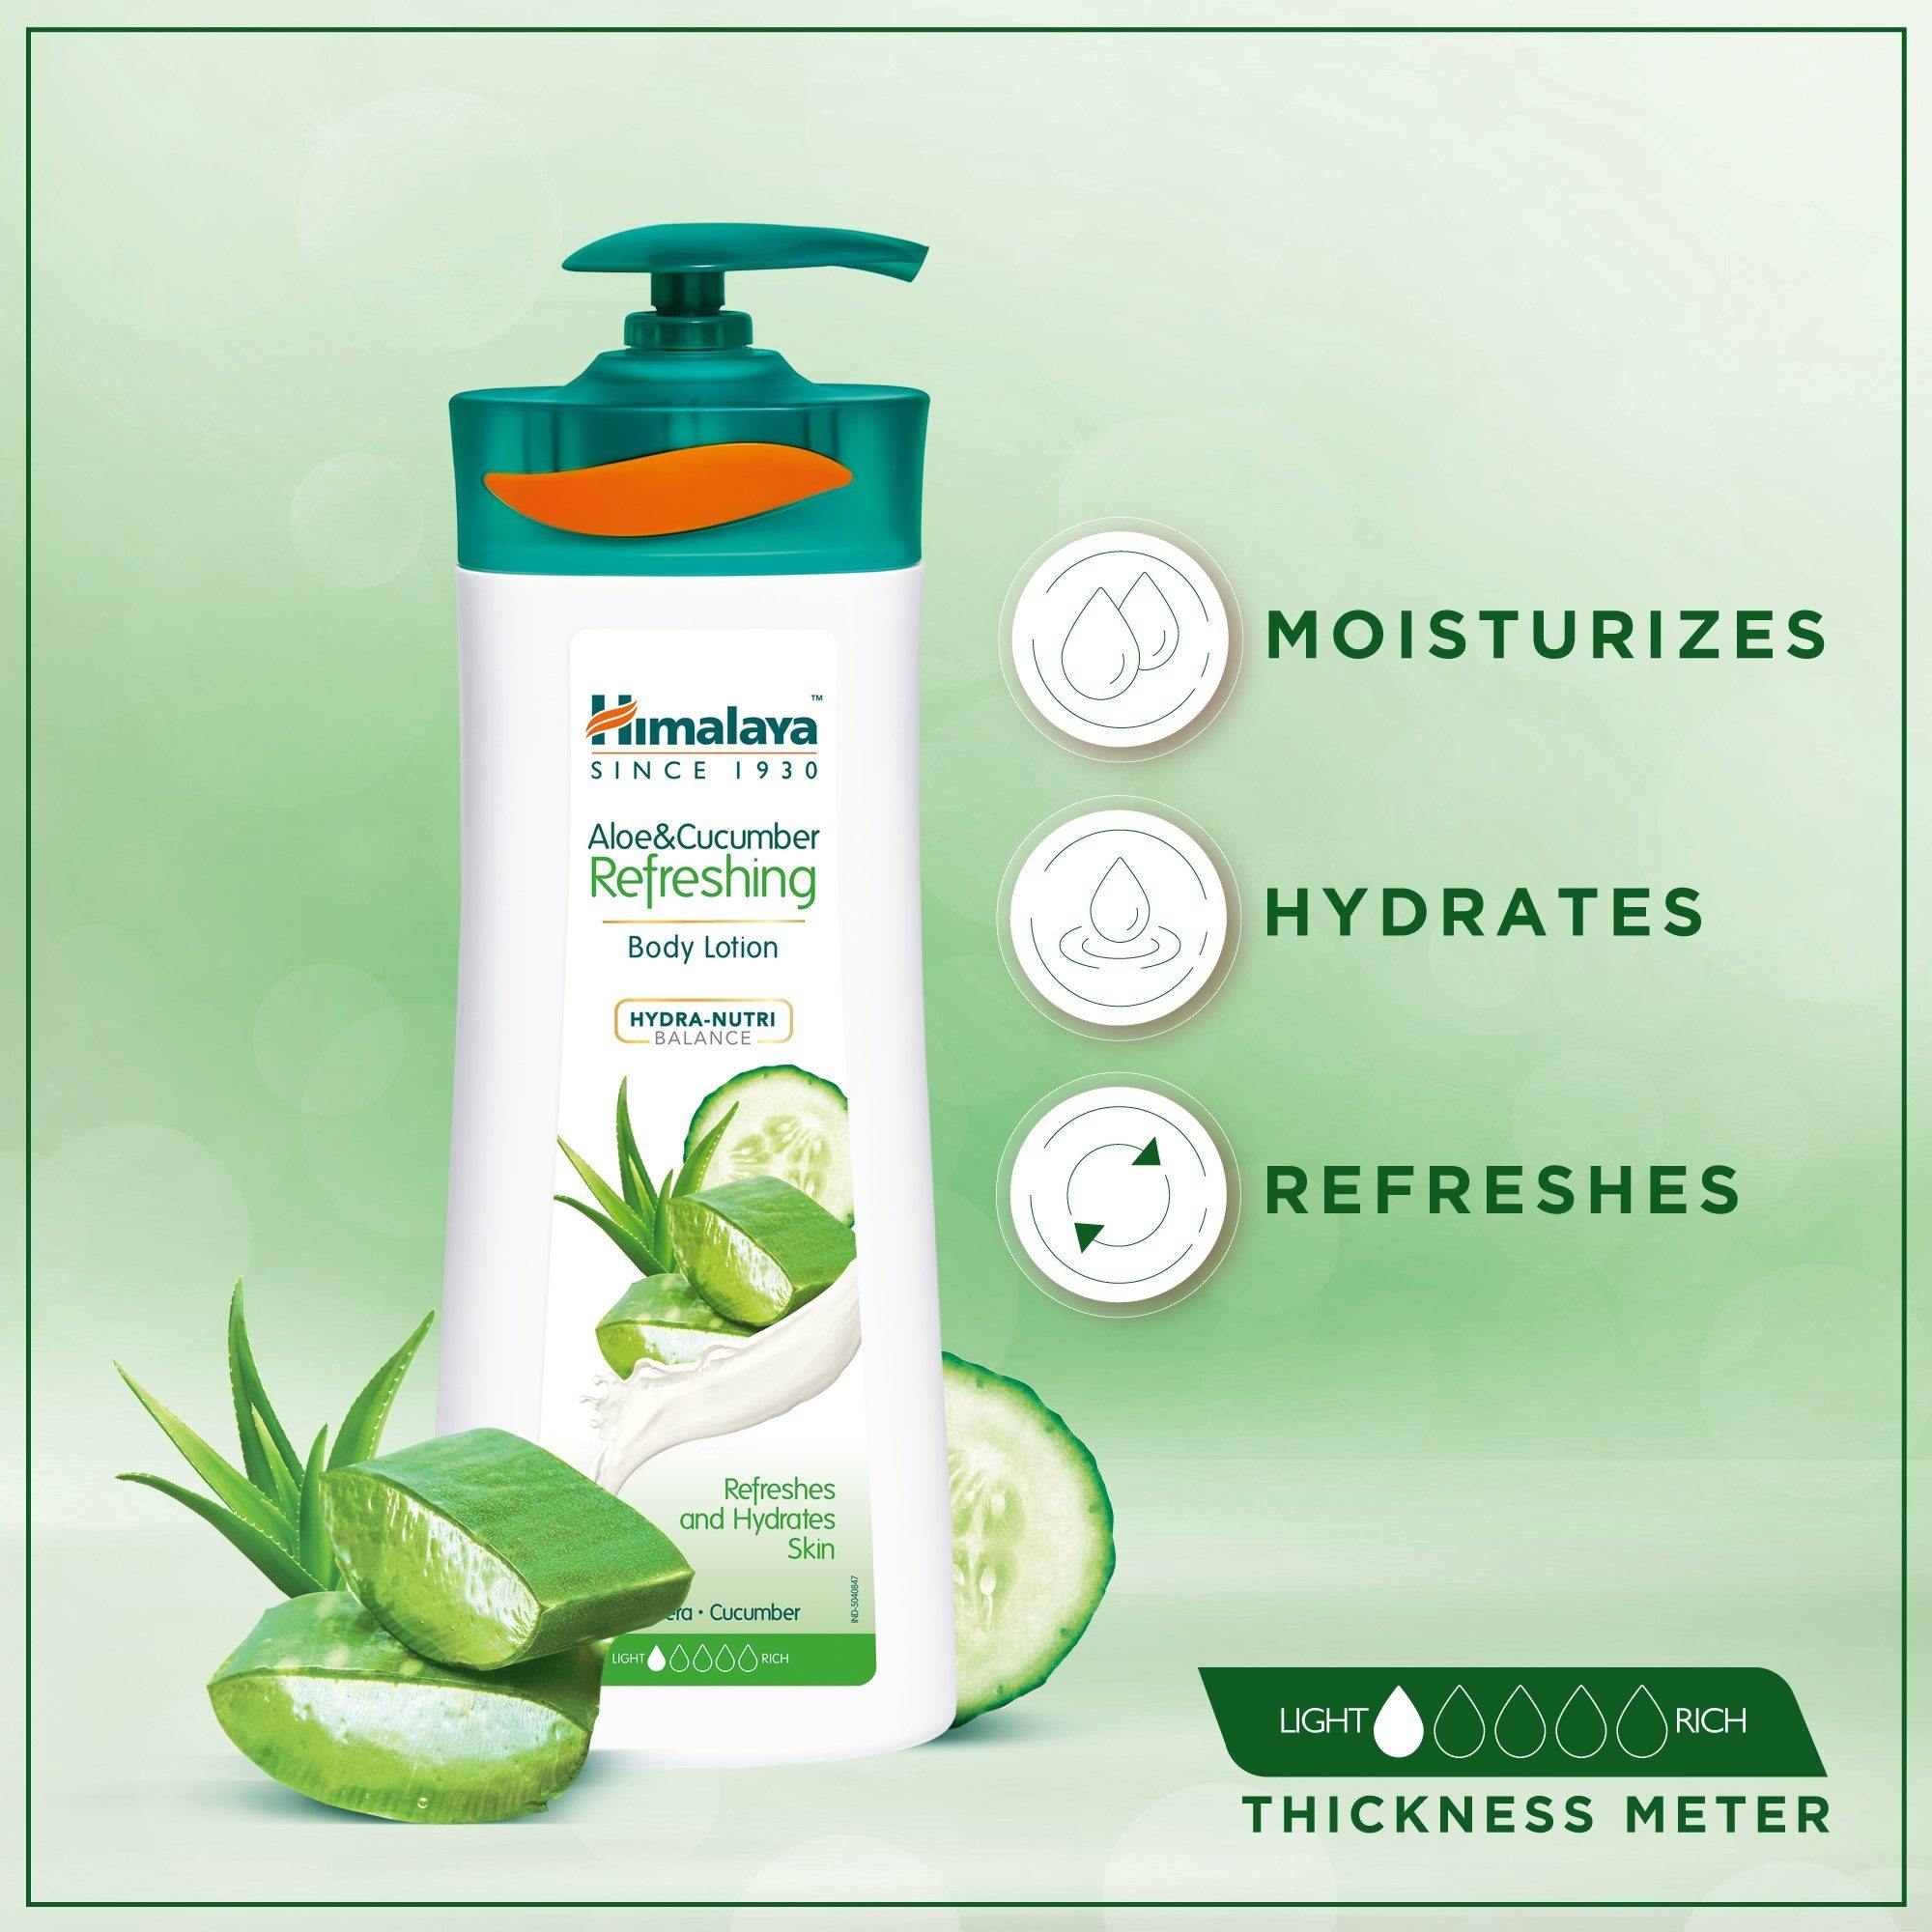 Himalaya Aloe & Cucumber Refreshing Body Lotion 400ml - Moisturizes, Hydrates, & Refreshes